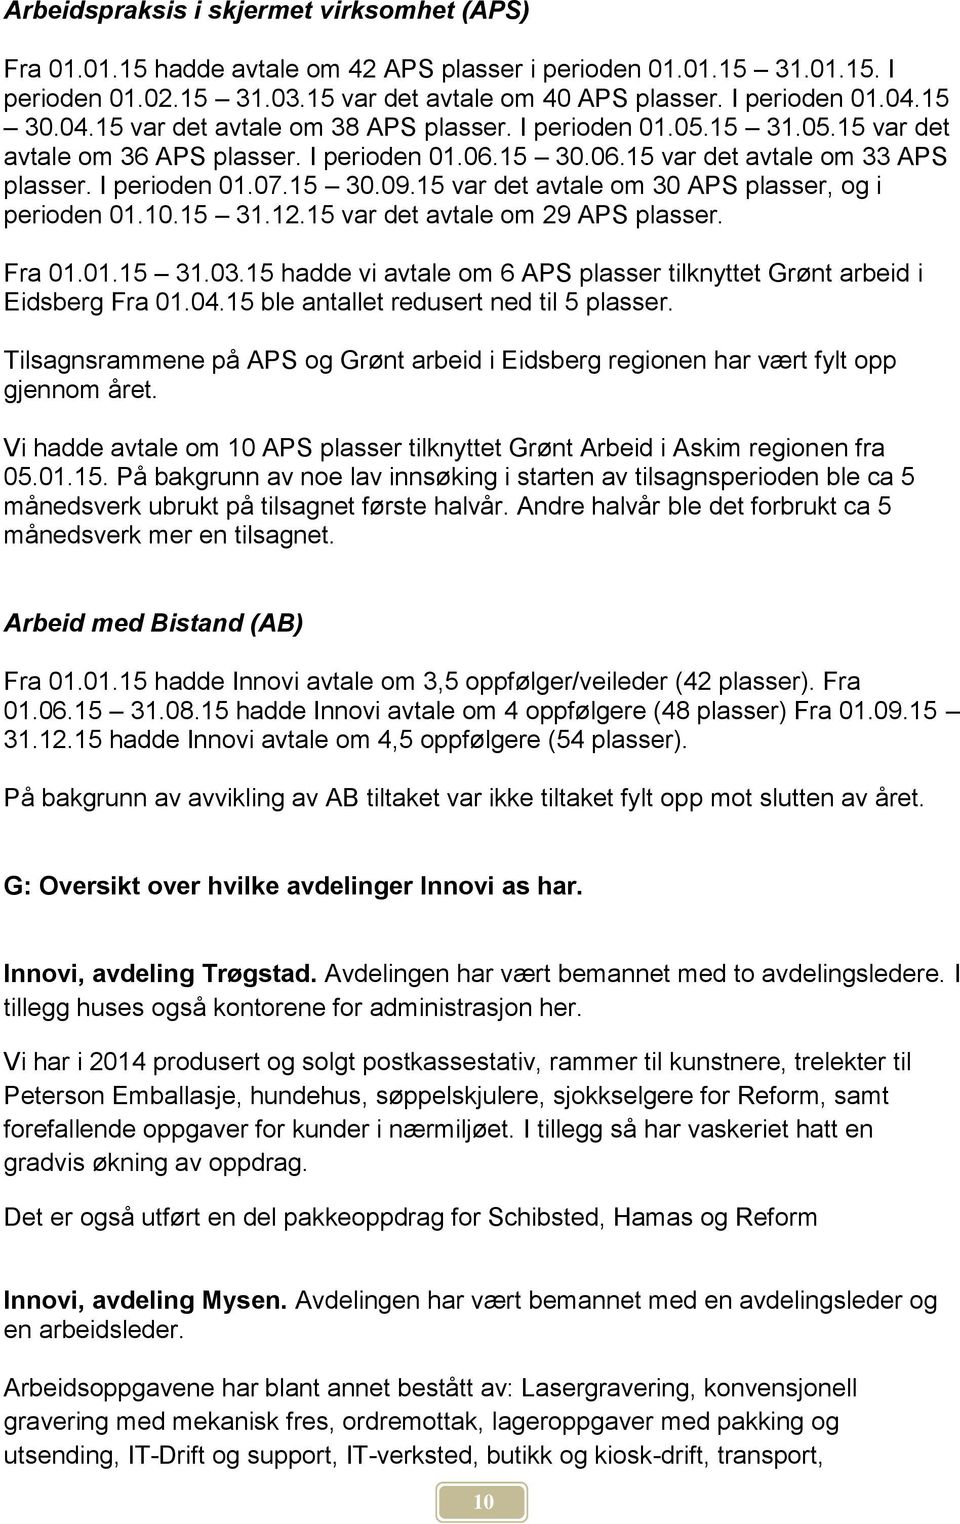 15 var det avtale om 30 APS plasser, og i perioden 01.10.15 31.12.15 var det avtale om 29 APS plasser. Fra 01.01.15 31.03.15 hadde vi avtale om 6 APS plasser tilknyttet Grønt arbeid i Eidsberg Fra 01.